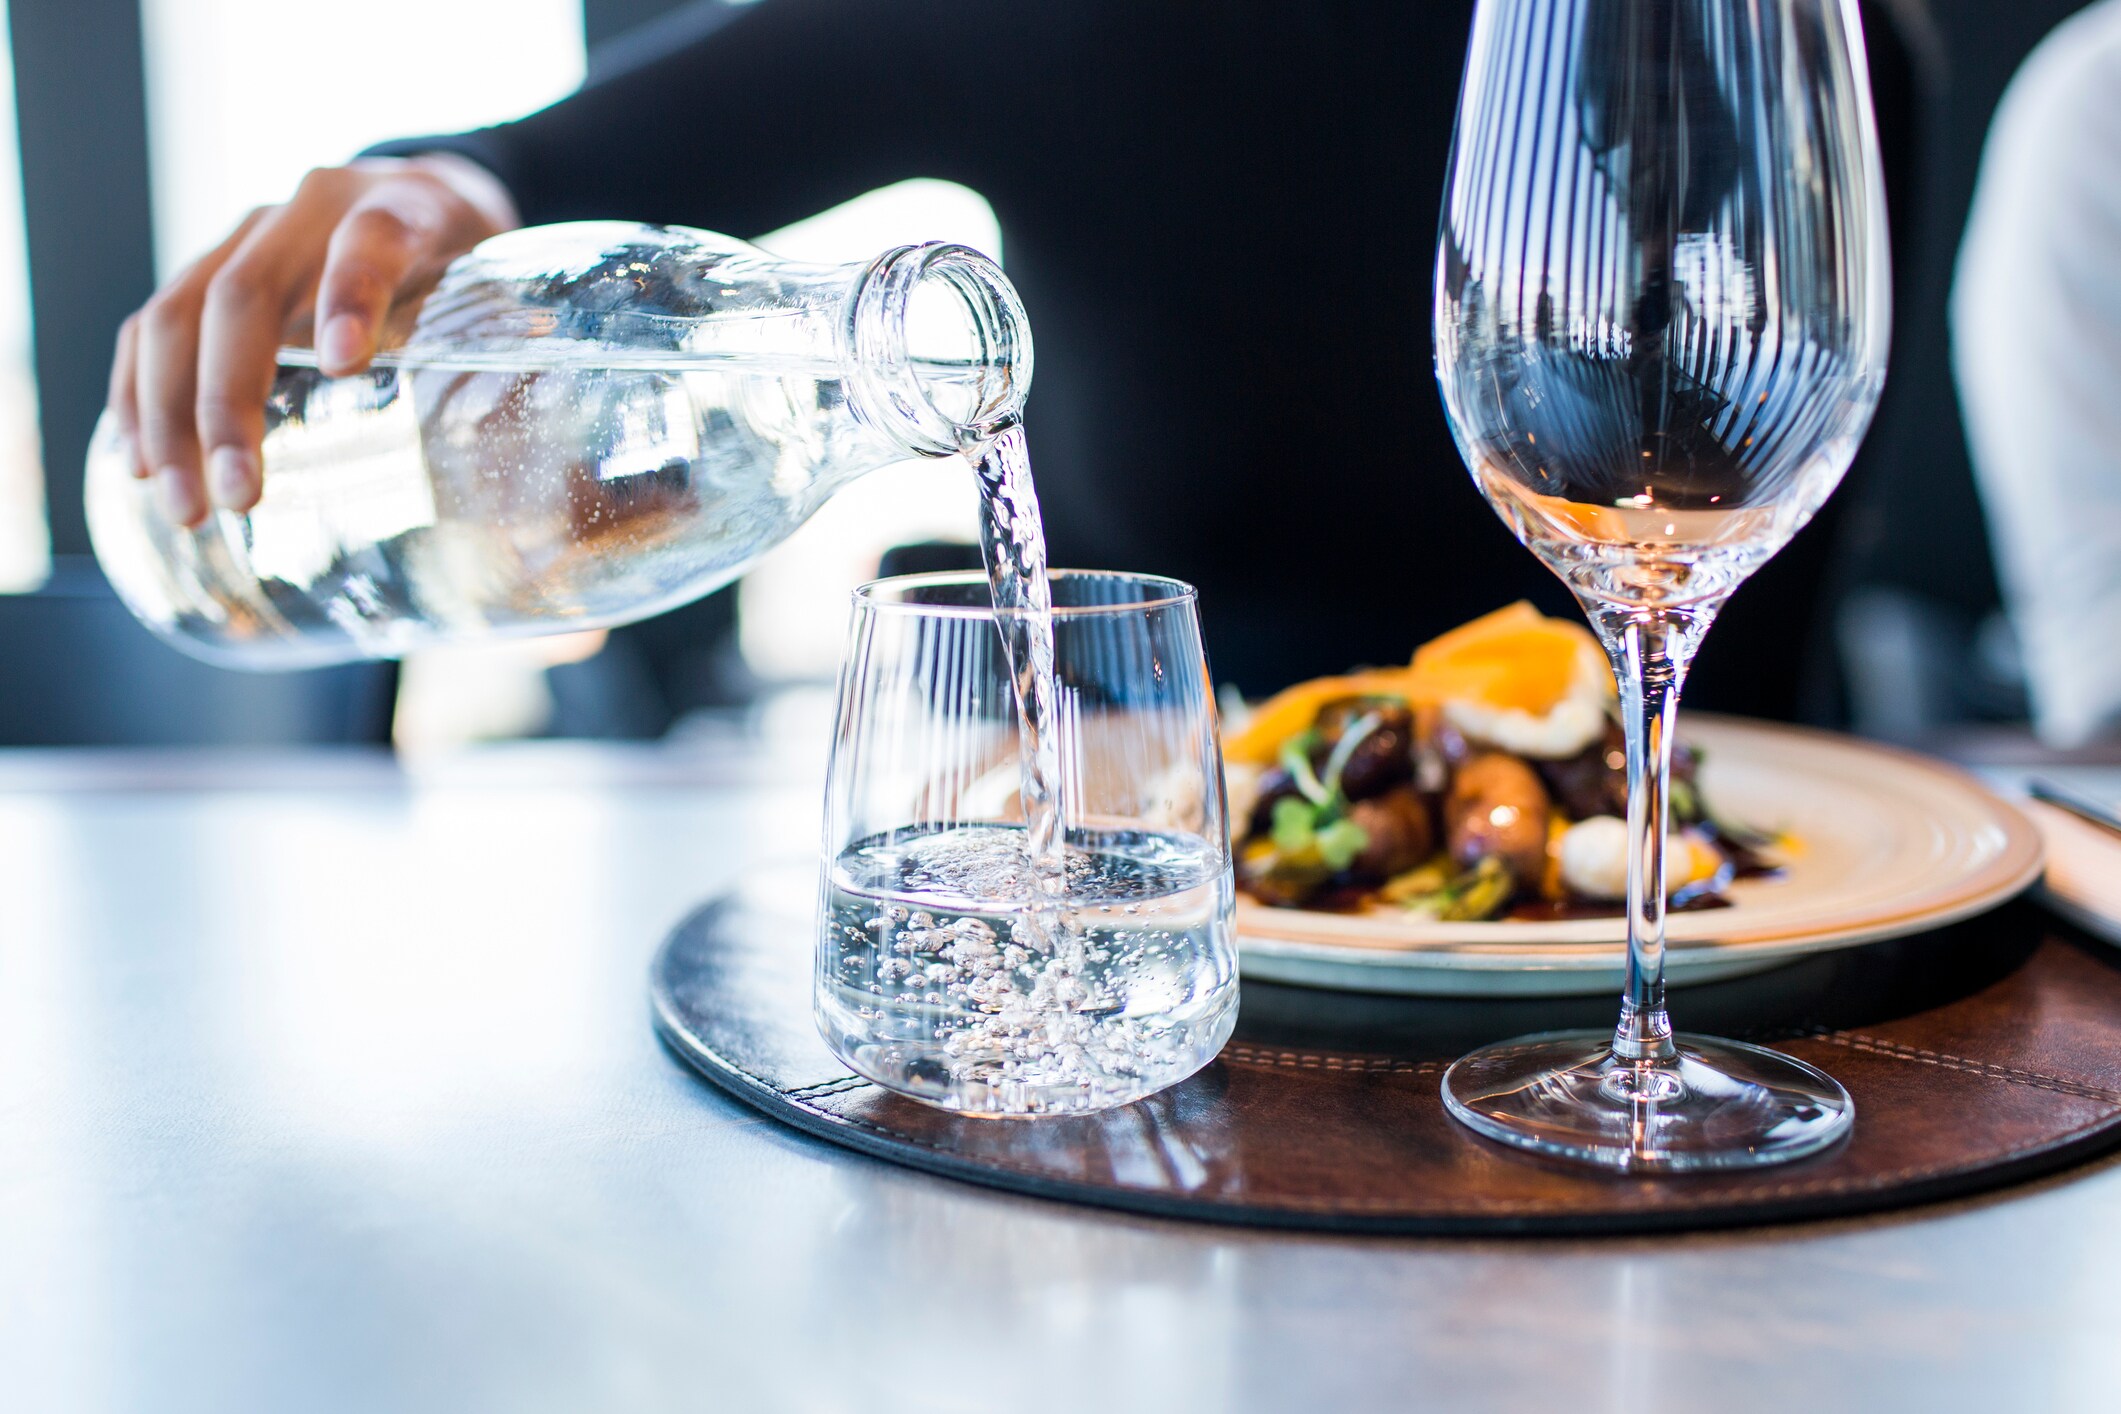 We drinken steeds meer water op restaurant: "Tijd dat we water naar waarde schatten"